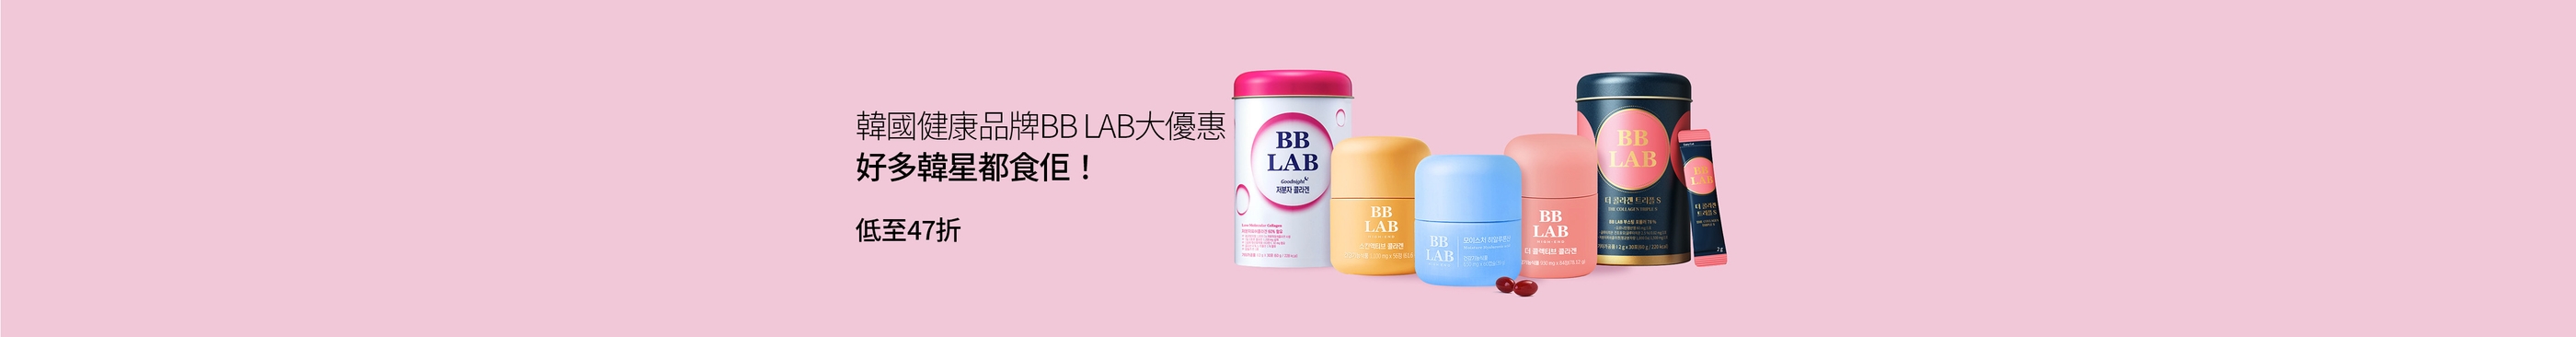 韓國健康品牌BB LAB大優惠